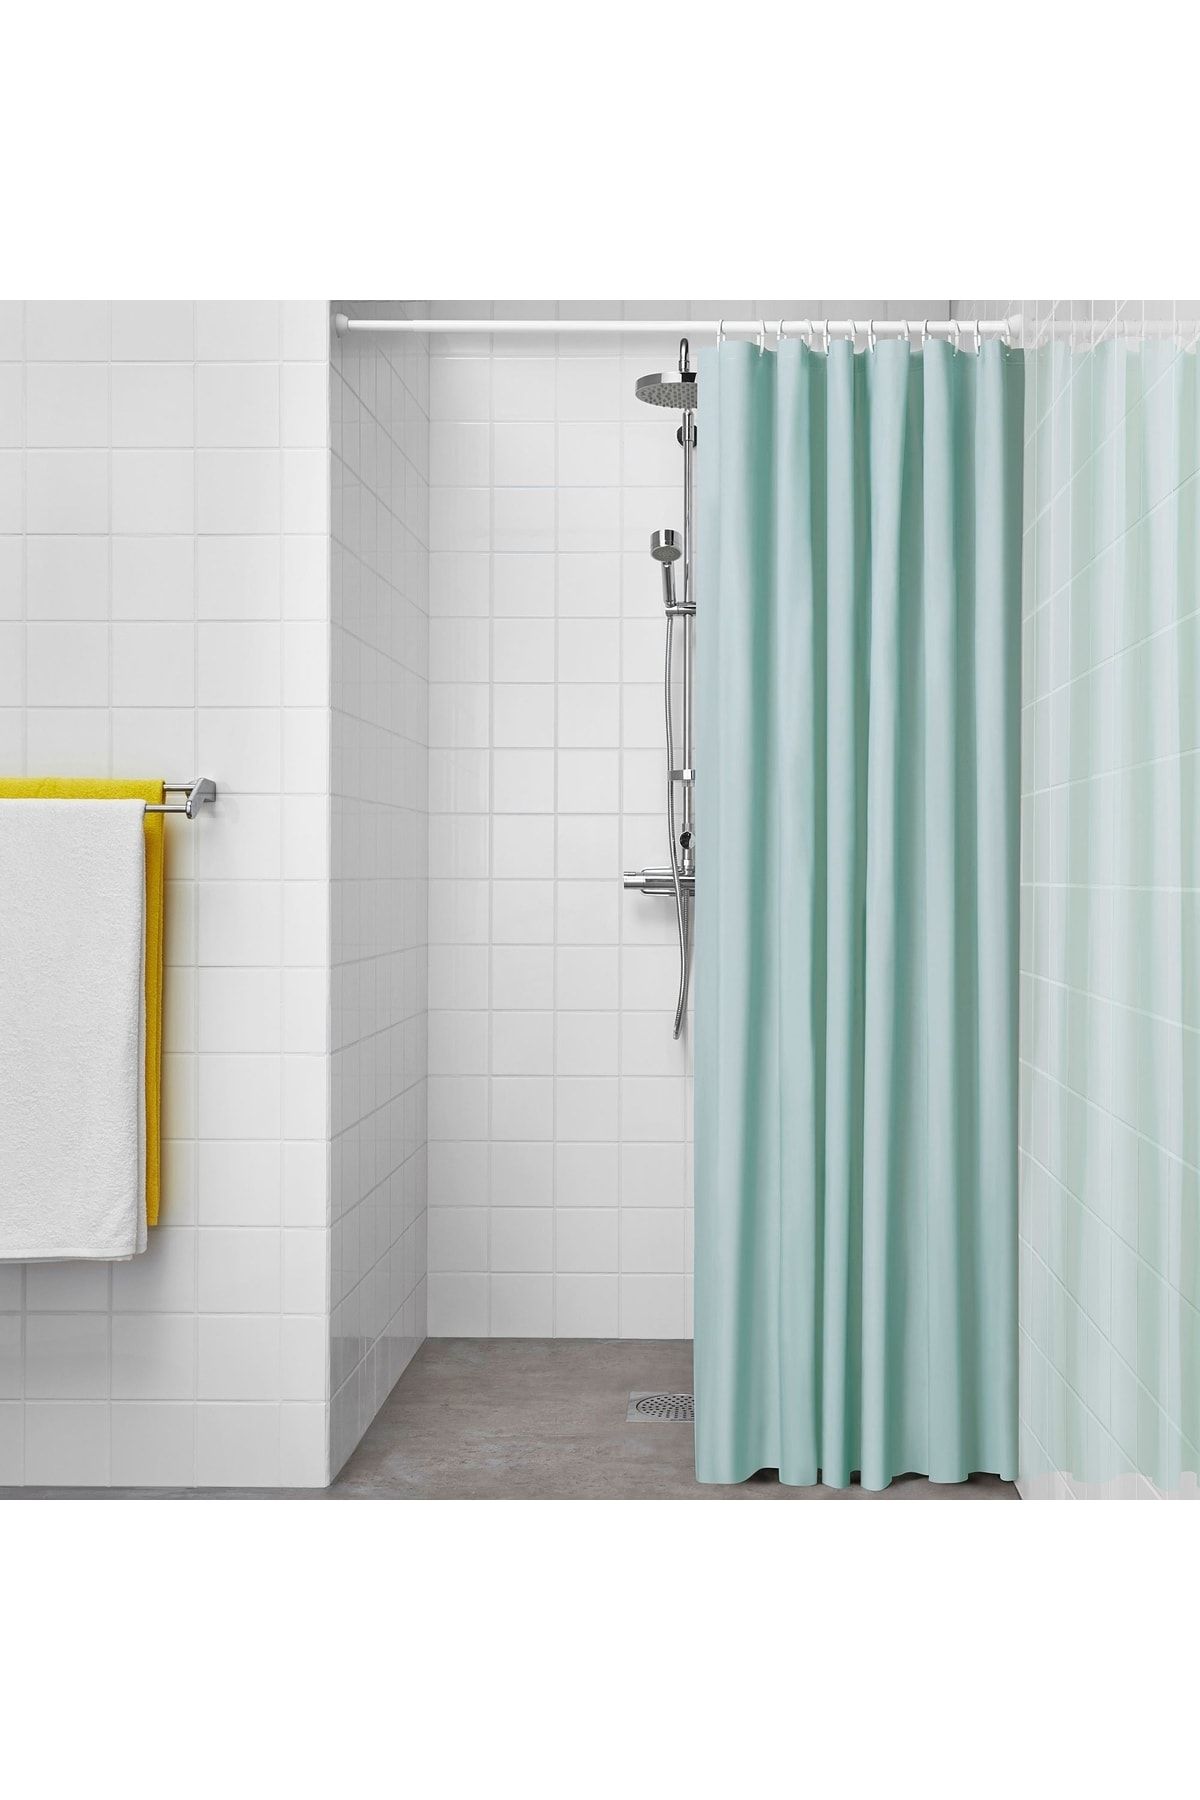 IKEA Duş Perdesi Uzunluk: 200 Cm Genişlik: 180 Cm Malzeme %100 Peva Renk Turkuaz